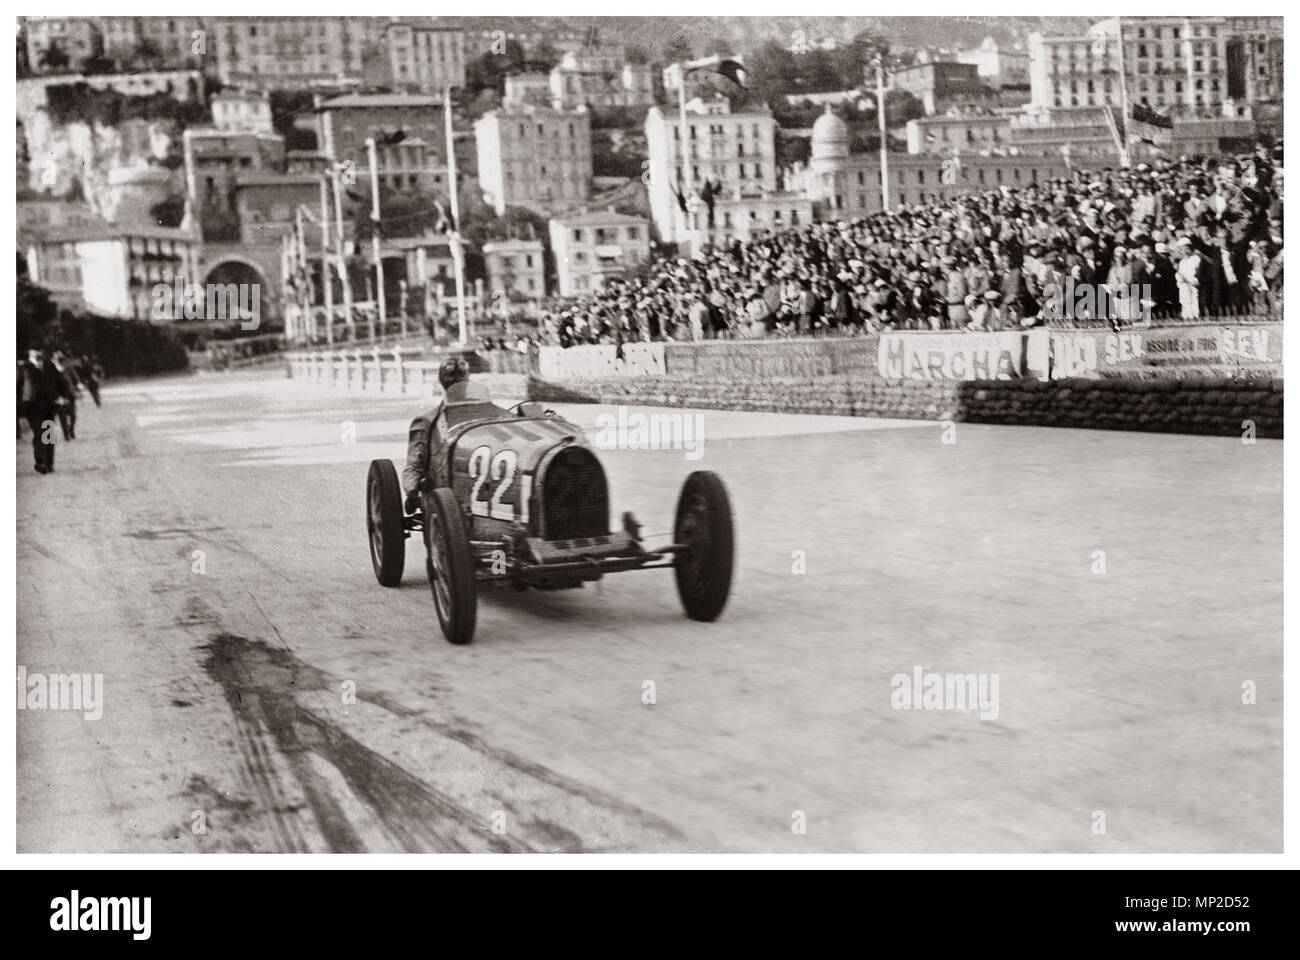 MONACO 1931 N° 22 gagnant 1930 Historique Grand Prix de Monaco gagner par Louis Chiron dans une Bugatti T51 au Grand Prix de Monaco 1931 Monaco France Banque D'Images